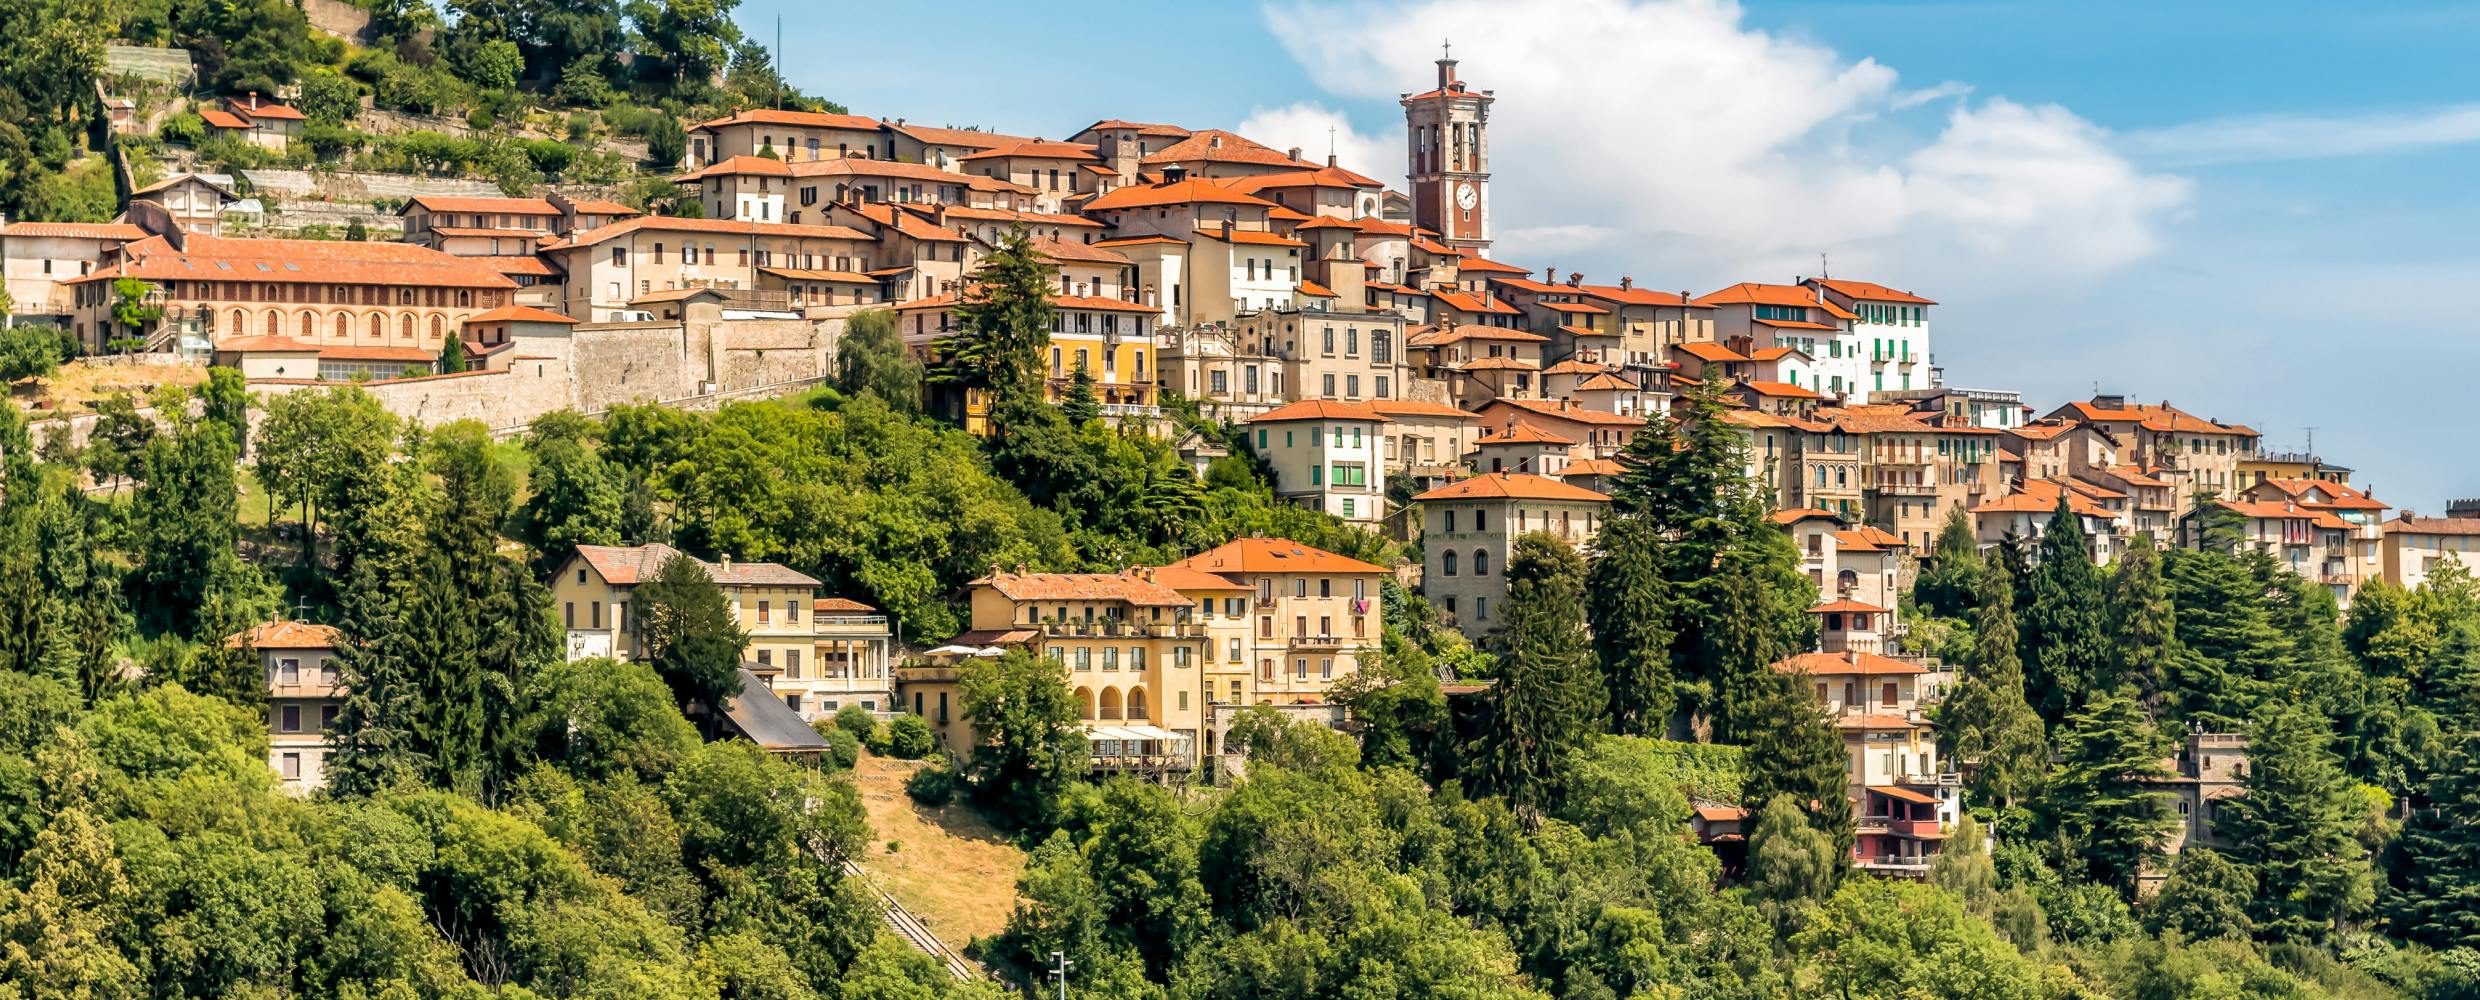 ein Panoramablick auf die Altstadt von Varese